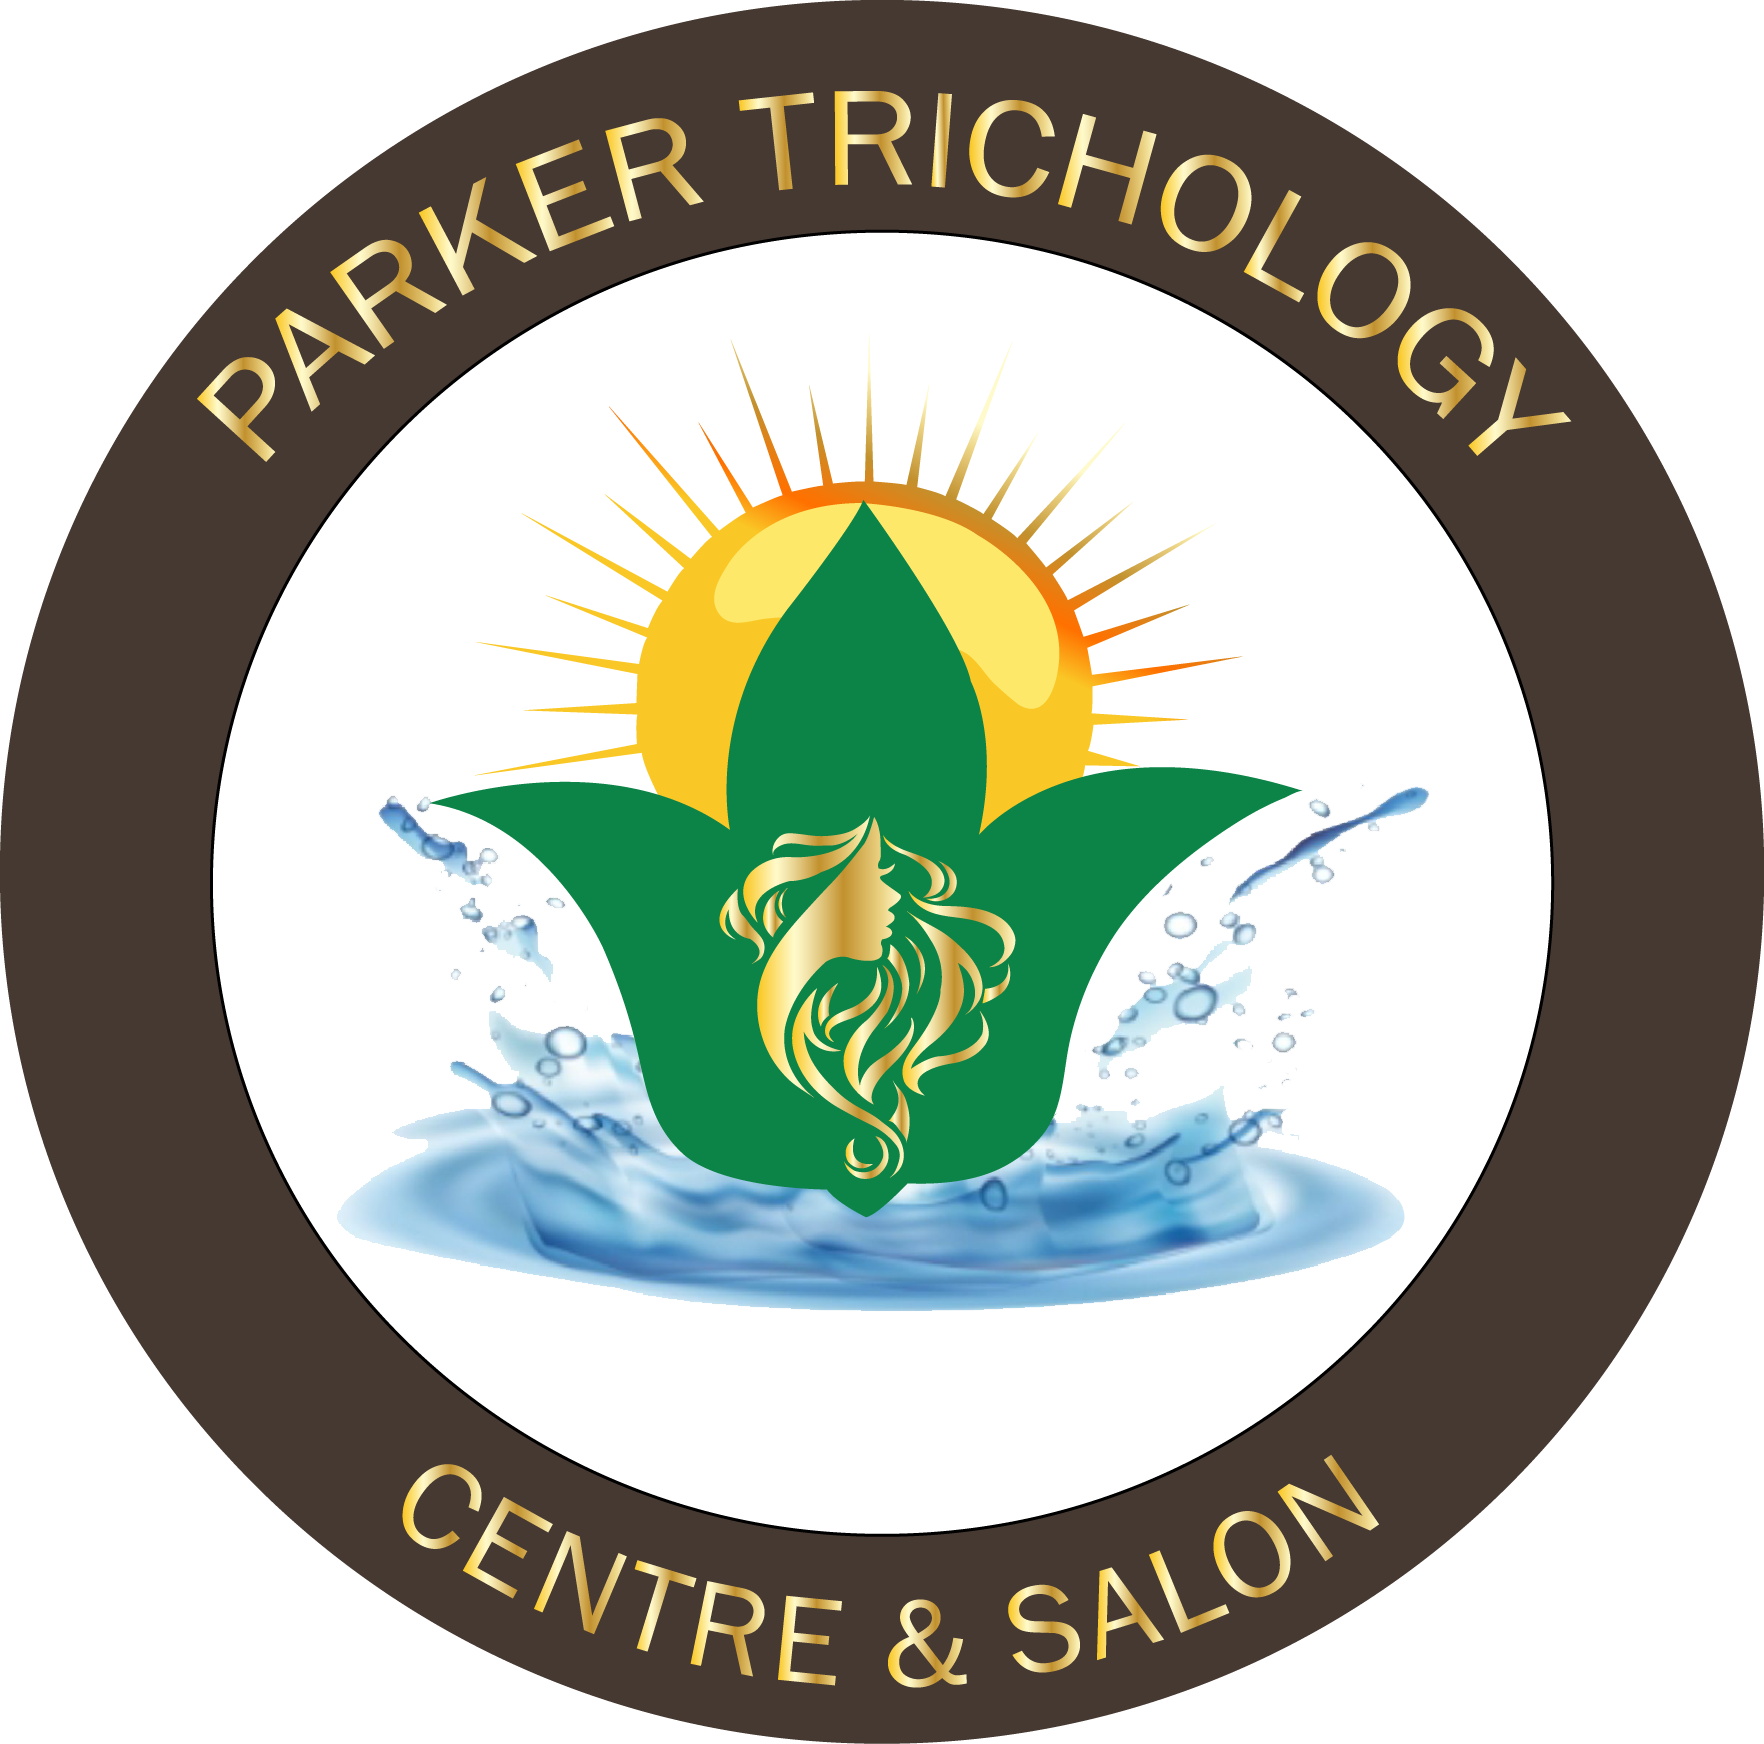 Parker Trichology Centre and Salon